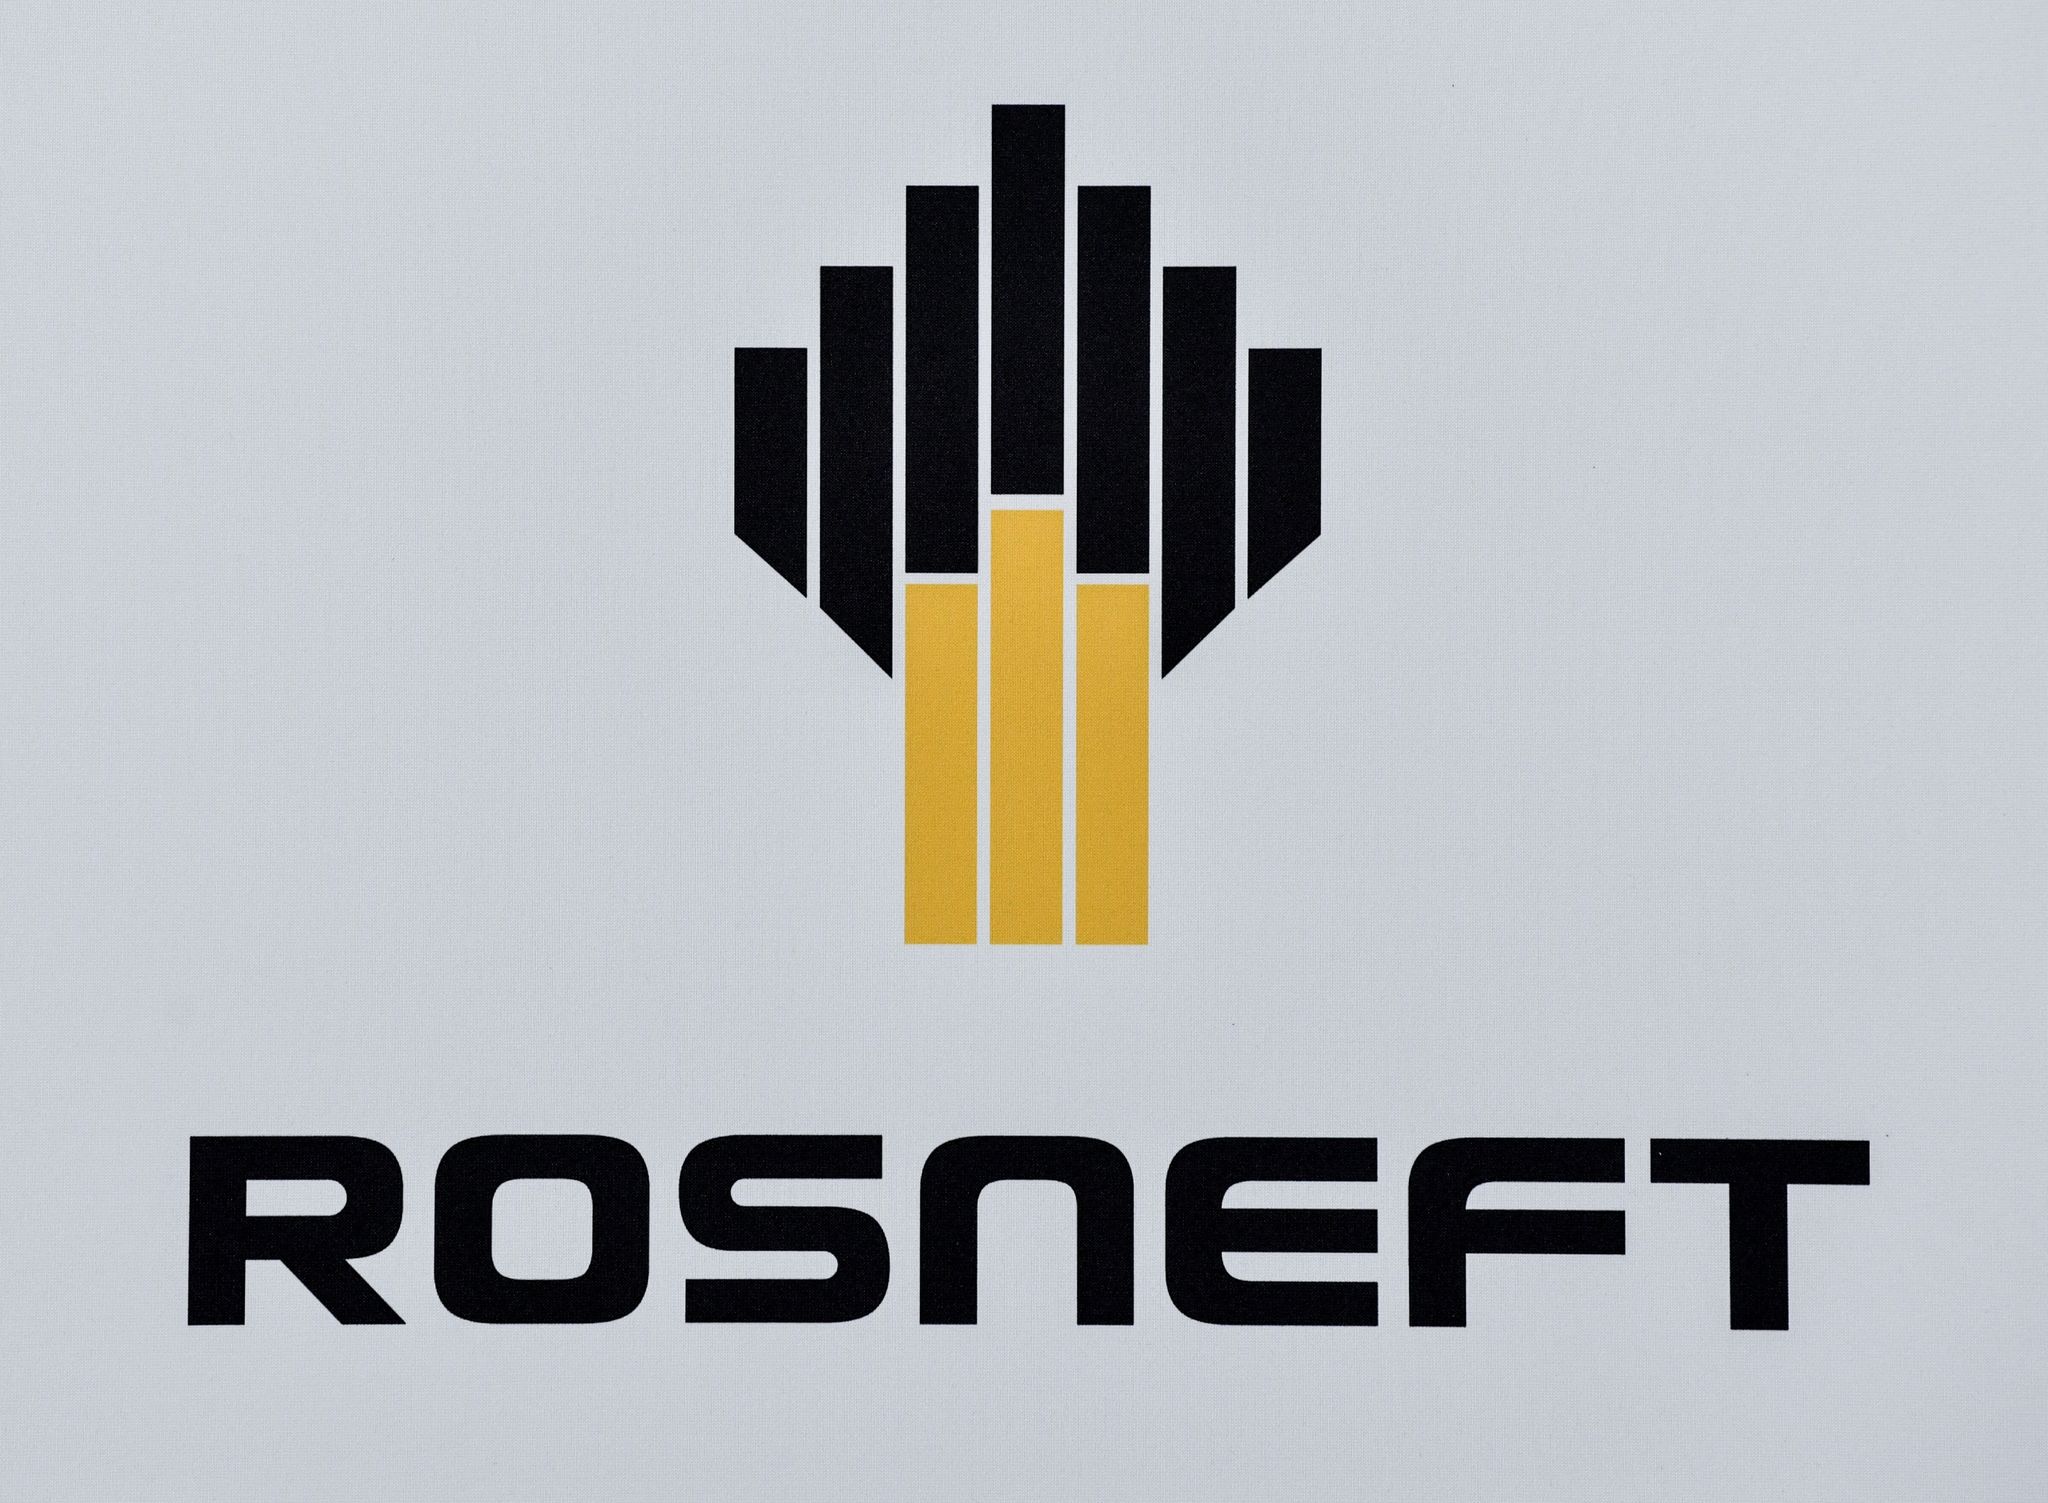 Das Logo des russischen Ölkonzerns Rosneft.